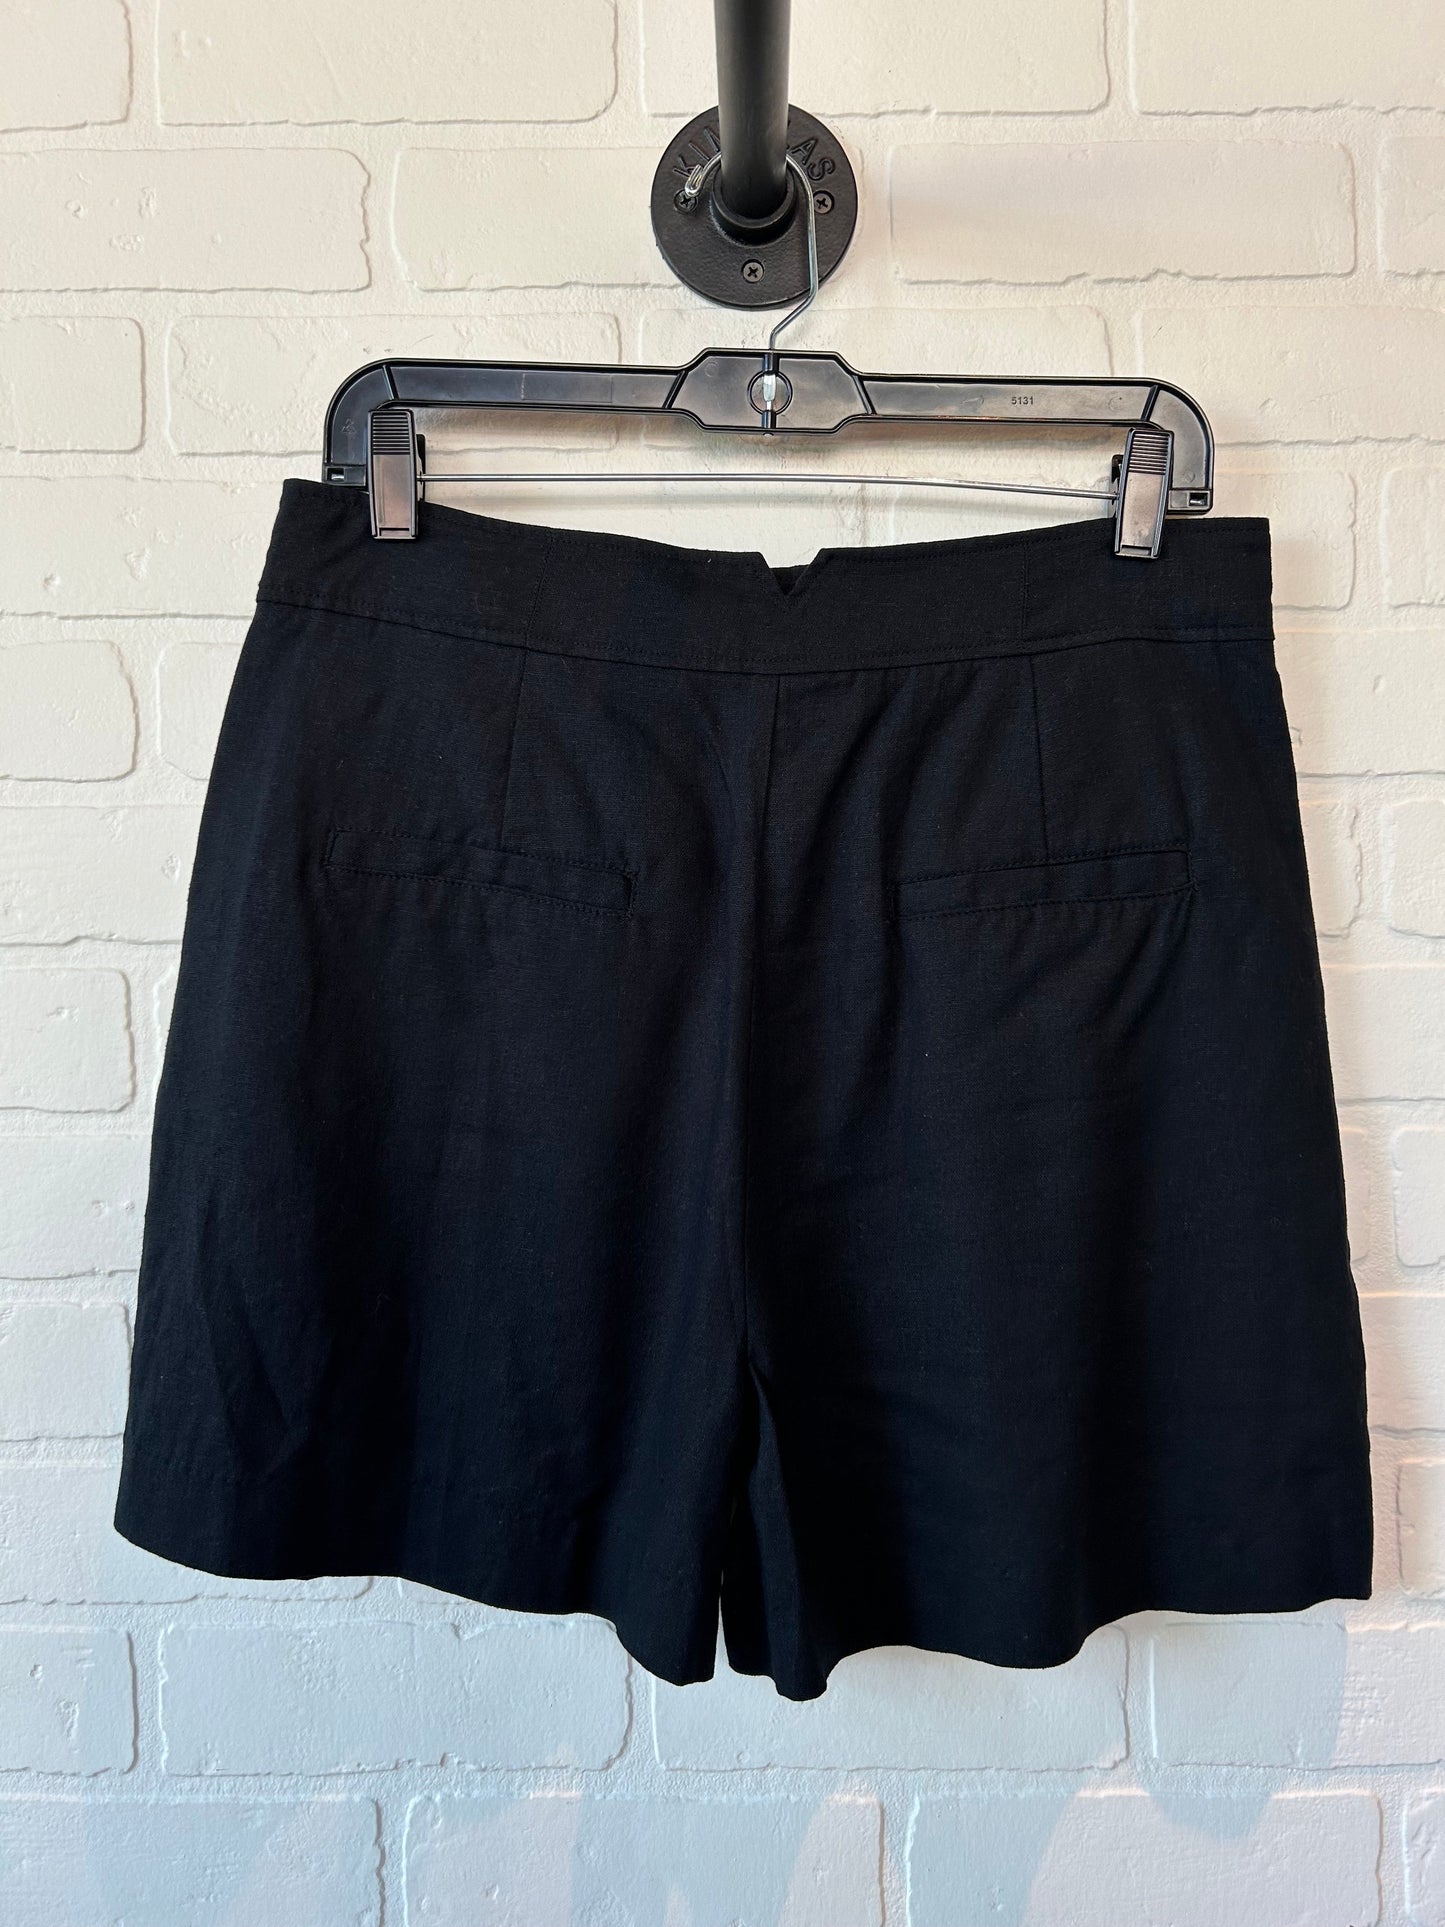 Black Shorts Jason Wu, Size 8